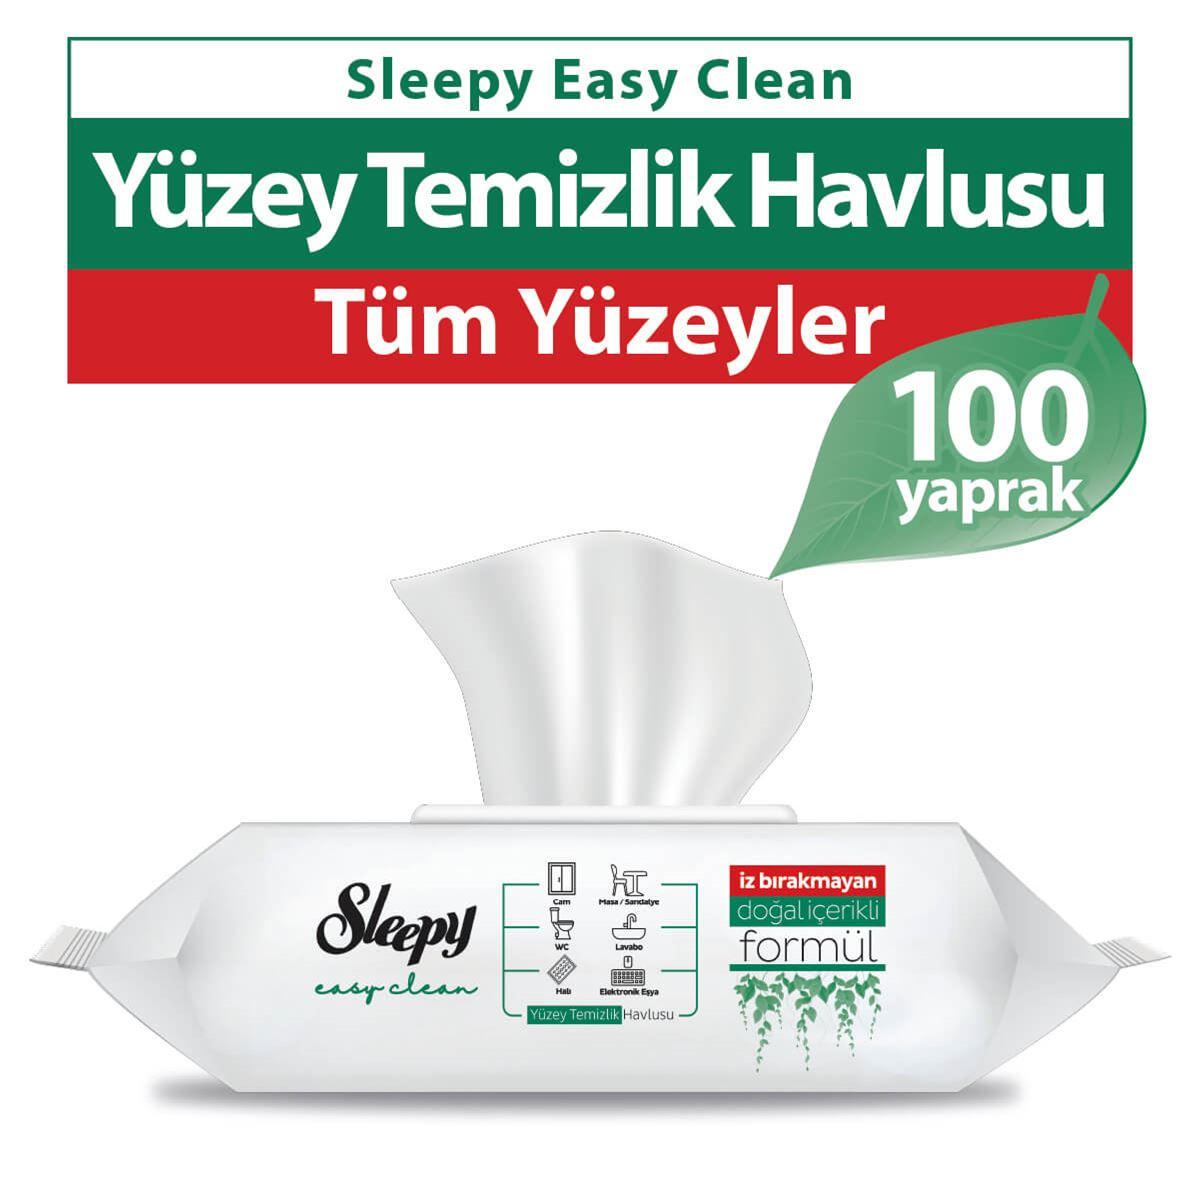 Sleepy Easy Clean Yüzey Temizlik Havlusu 100 Yaprak 11 Paket